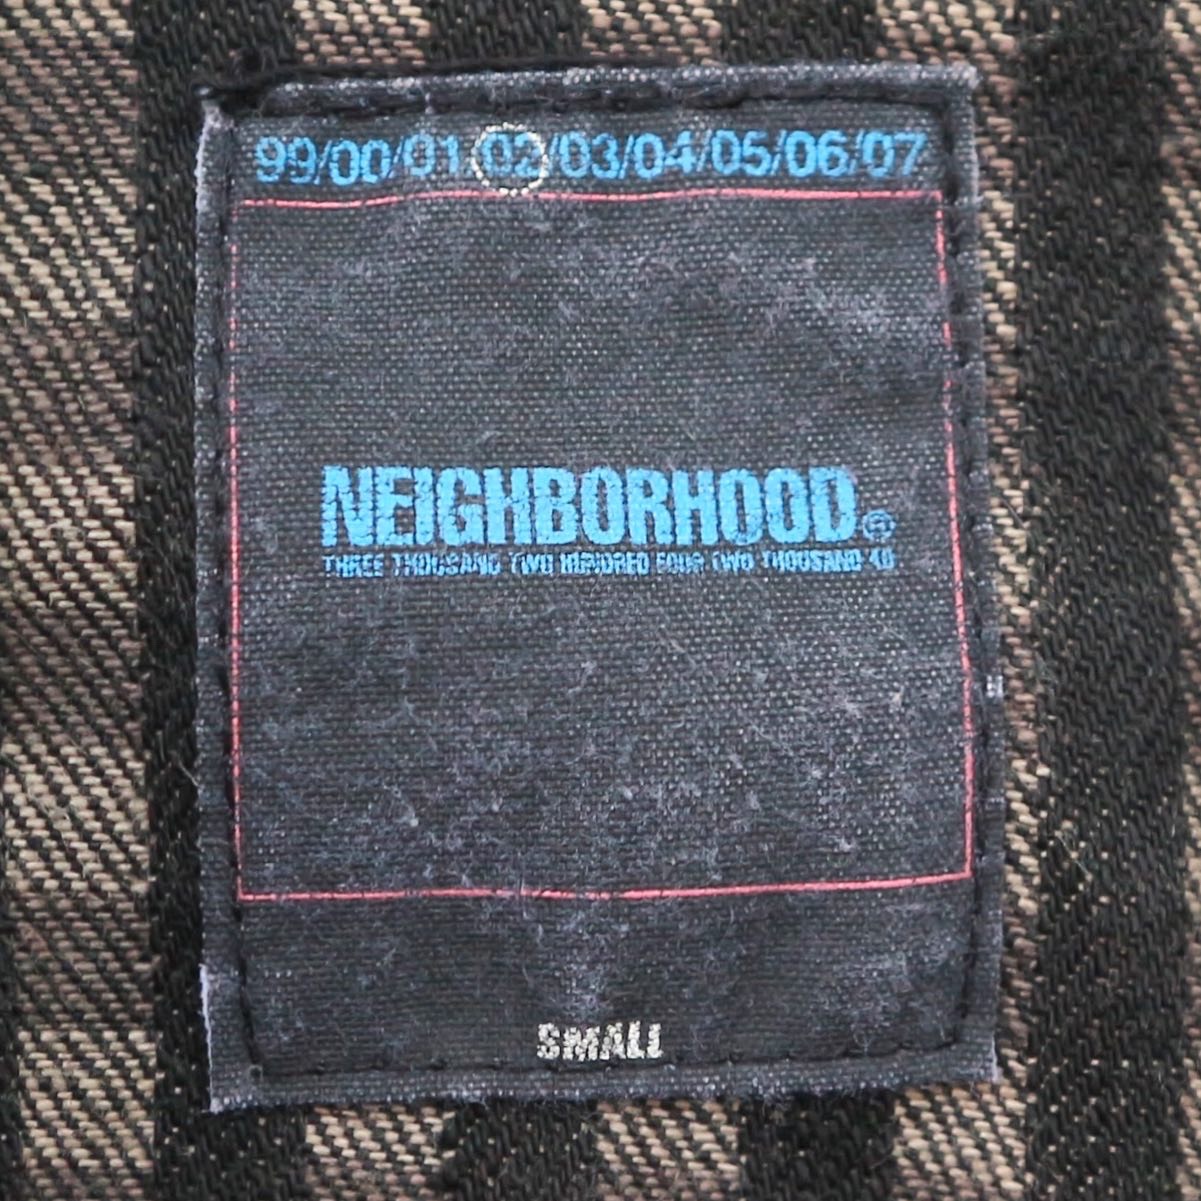 Neighborhood Jacket Size Women M